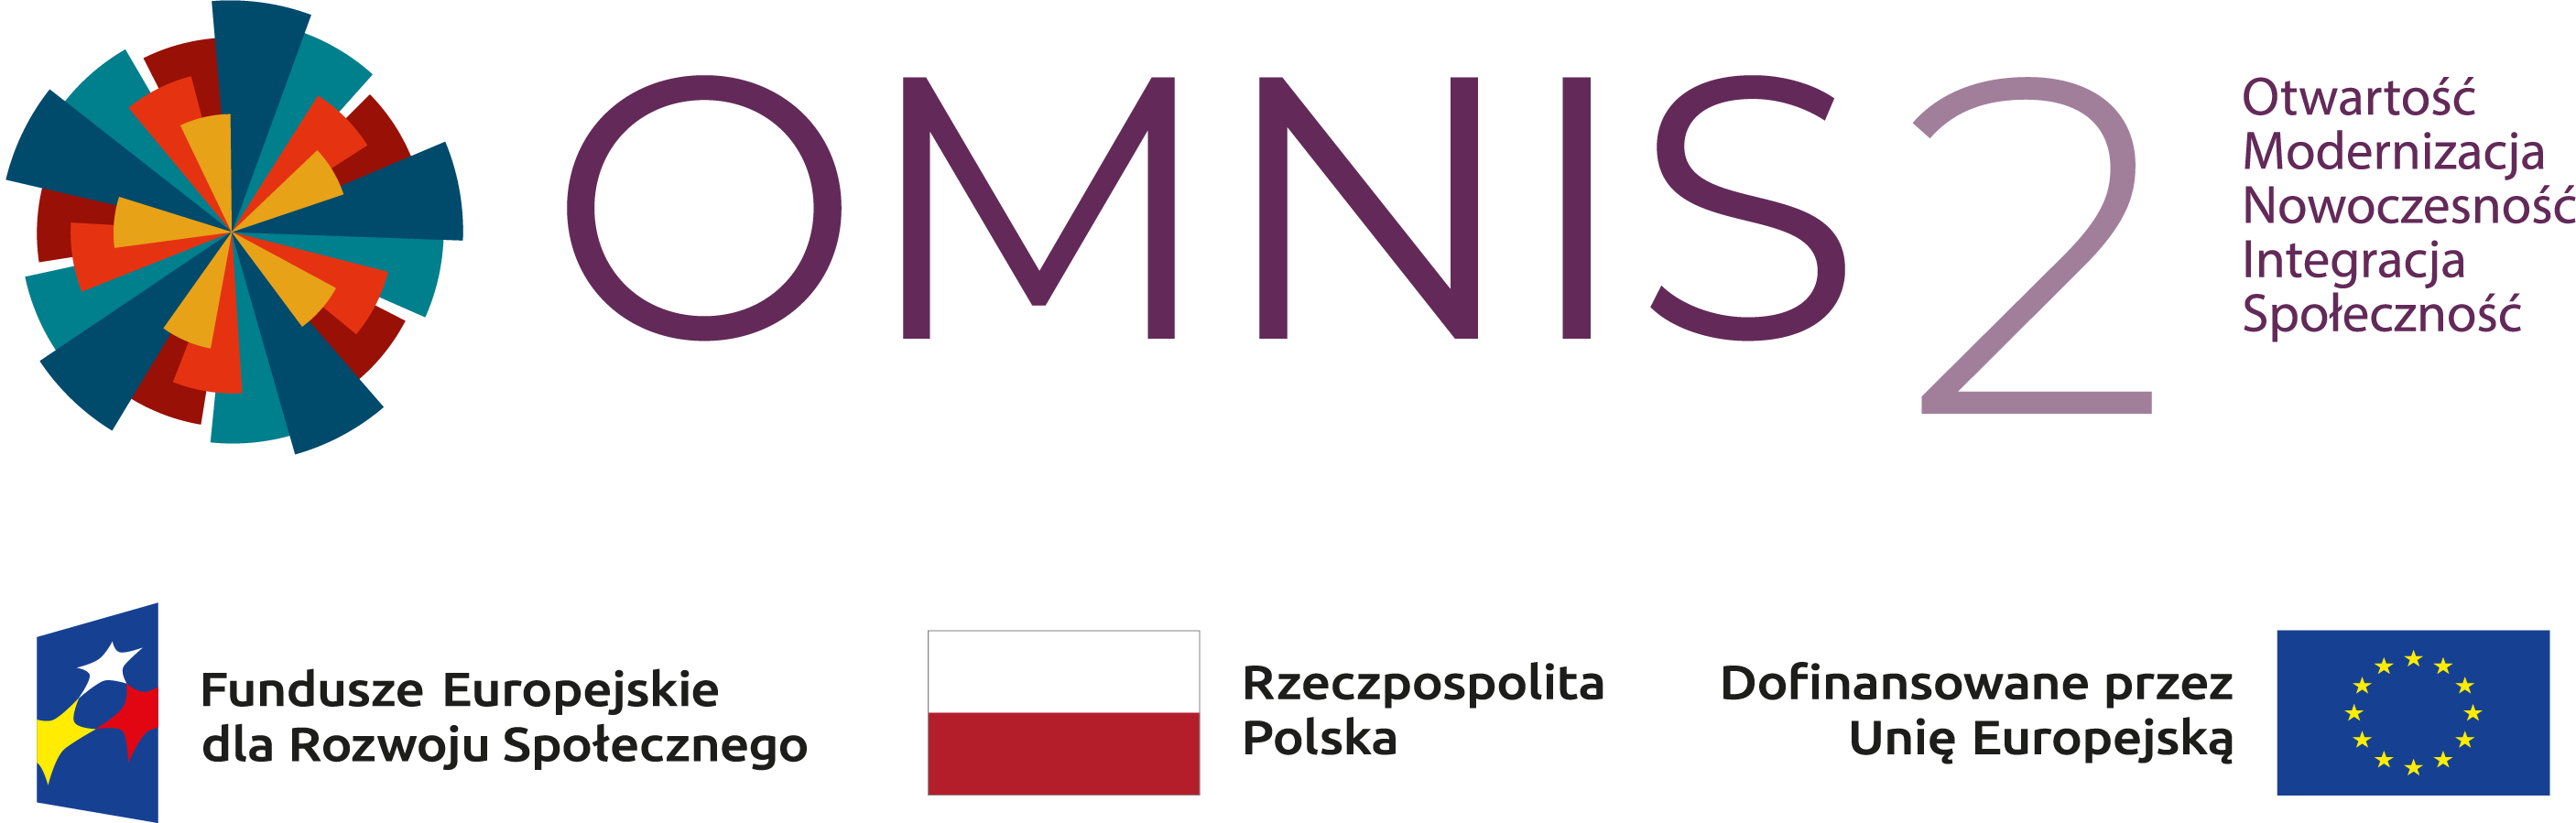 Logo z nazwą i rozwinięciem oraz poniżej belka instytucji